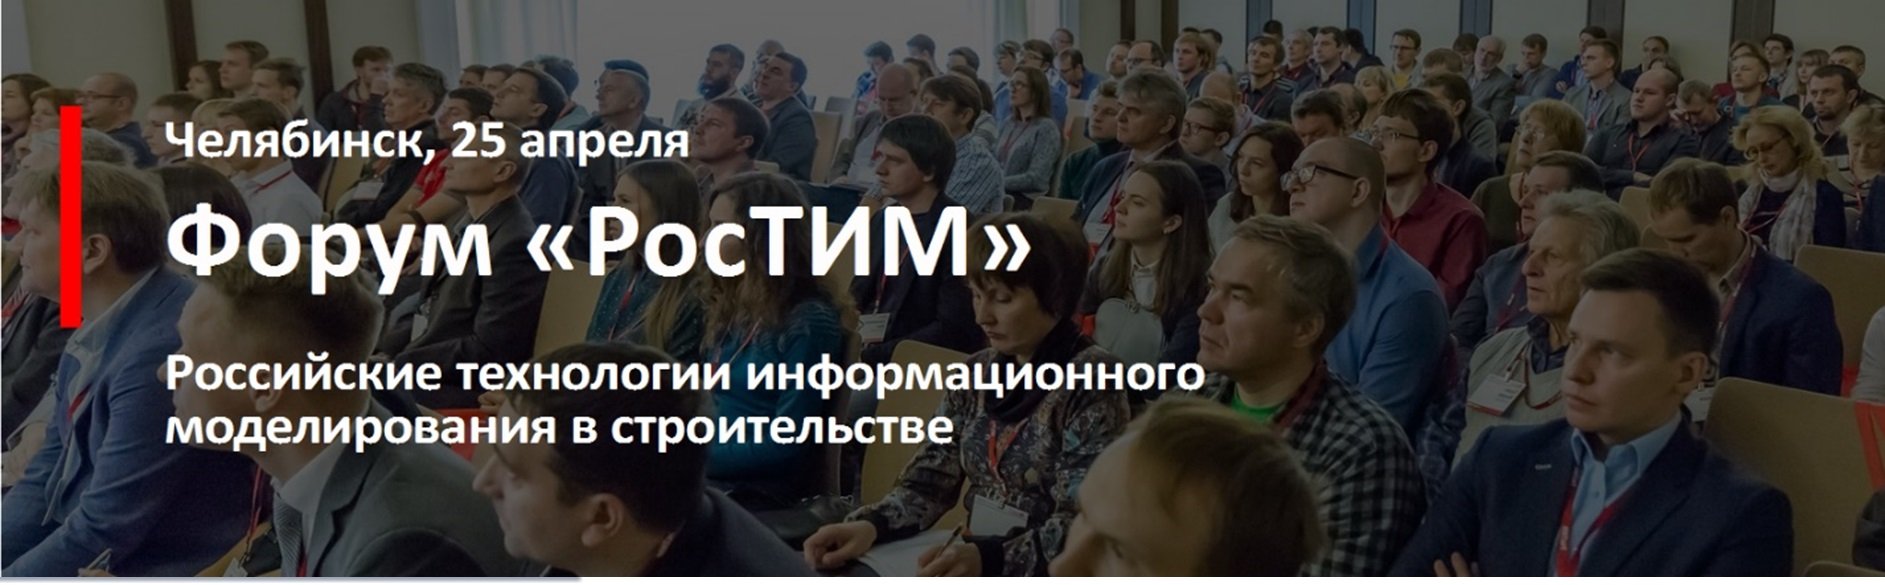 РосТИМ 2019 в Челябинске